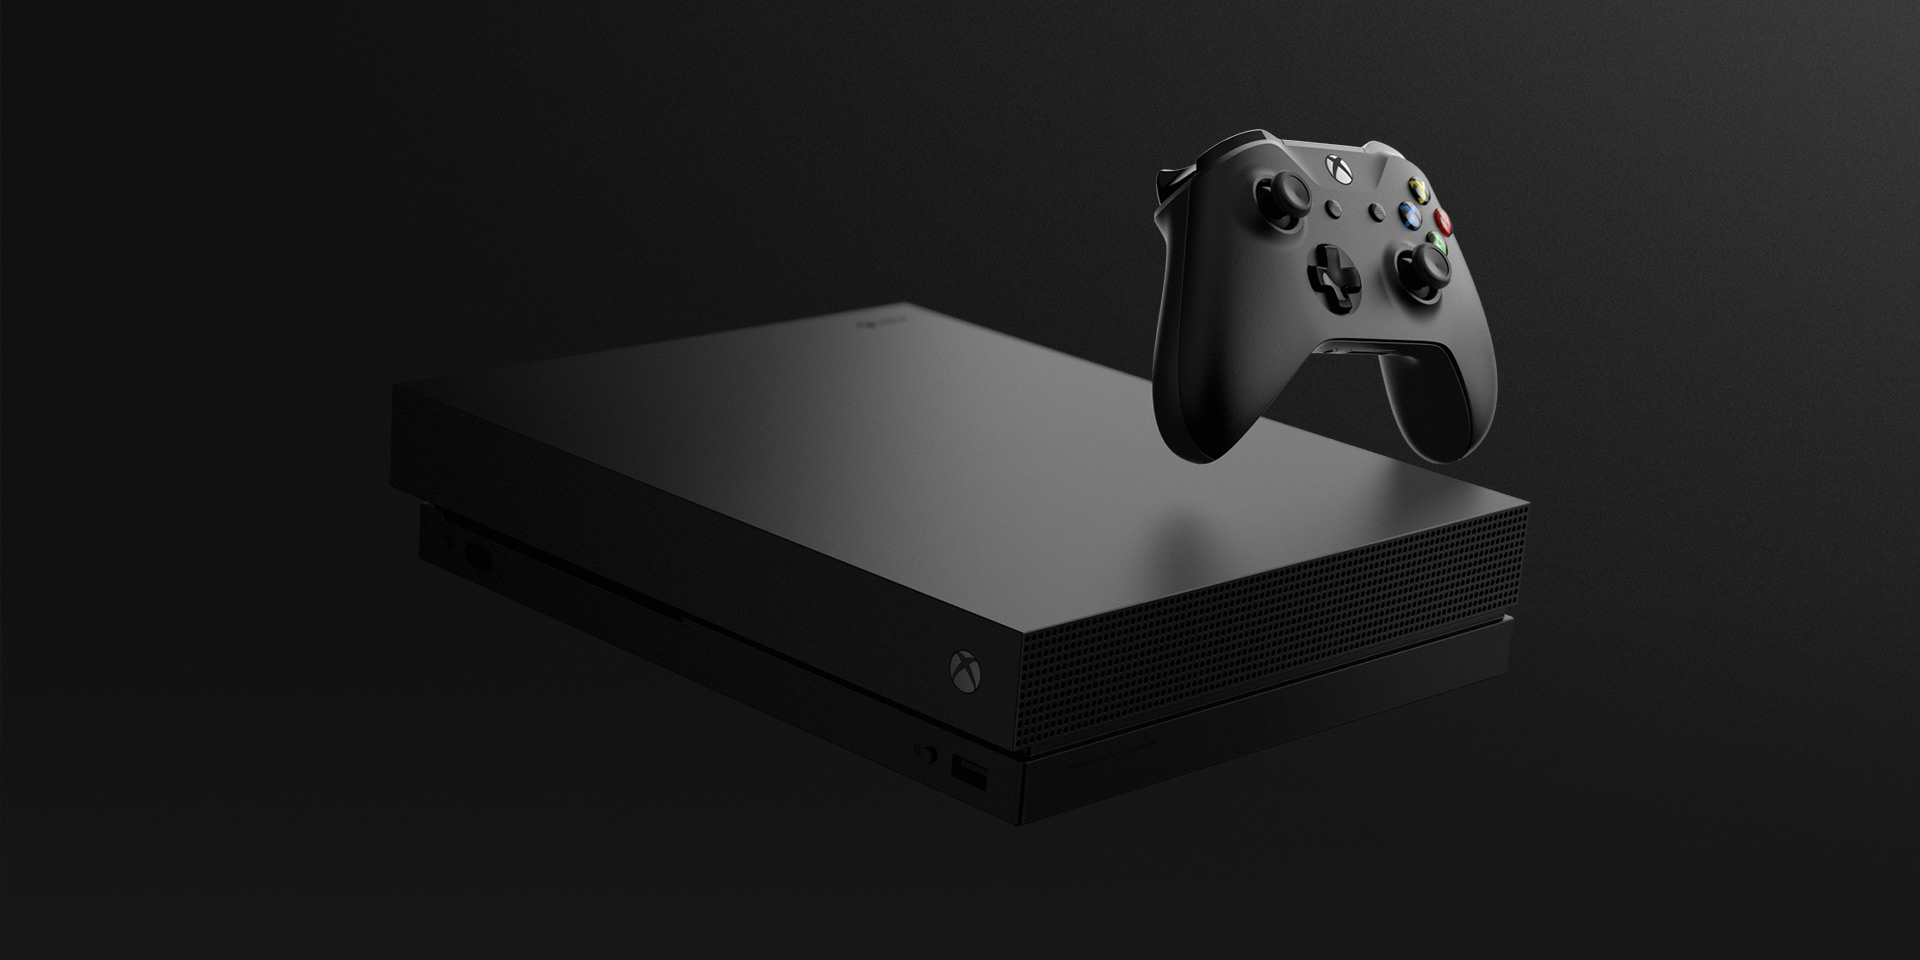 voorraad Het begin Terug, terug, terug deel All Xbox One consoles to get Dolby Atmos audio upmixing | TechRadar